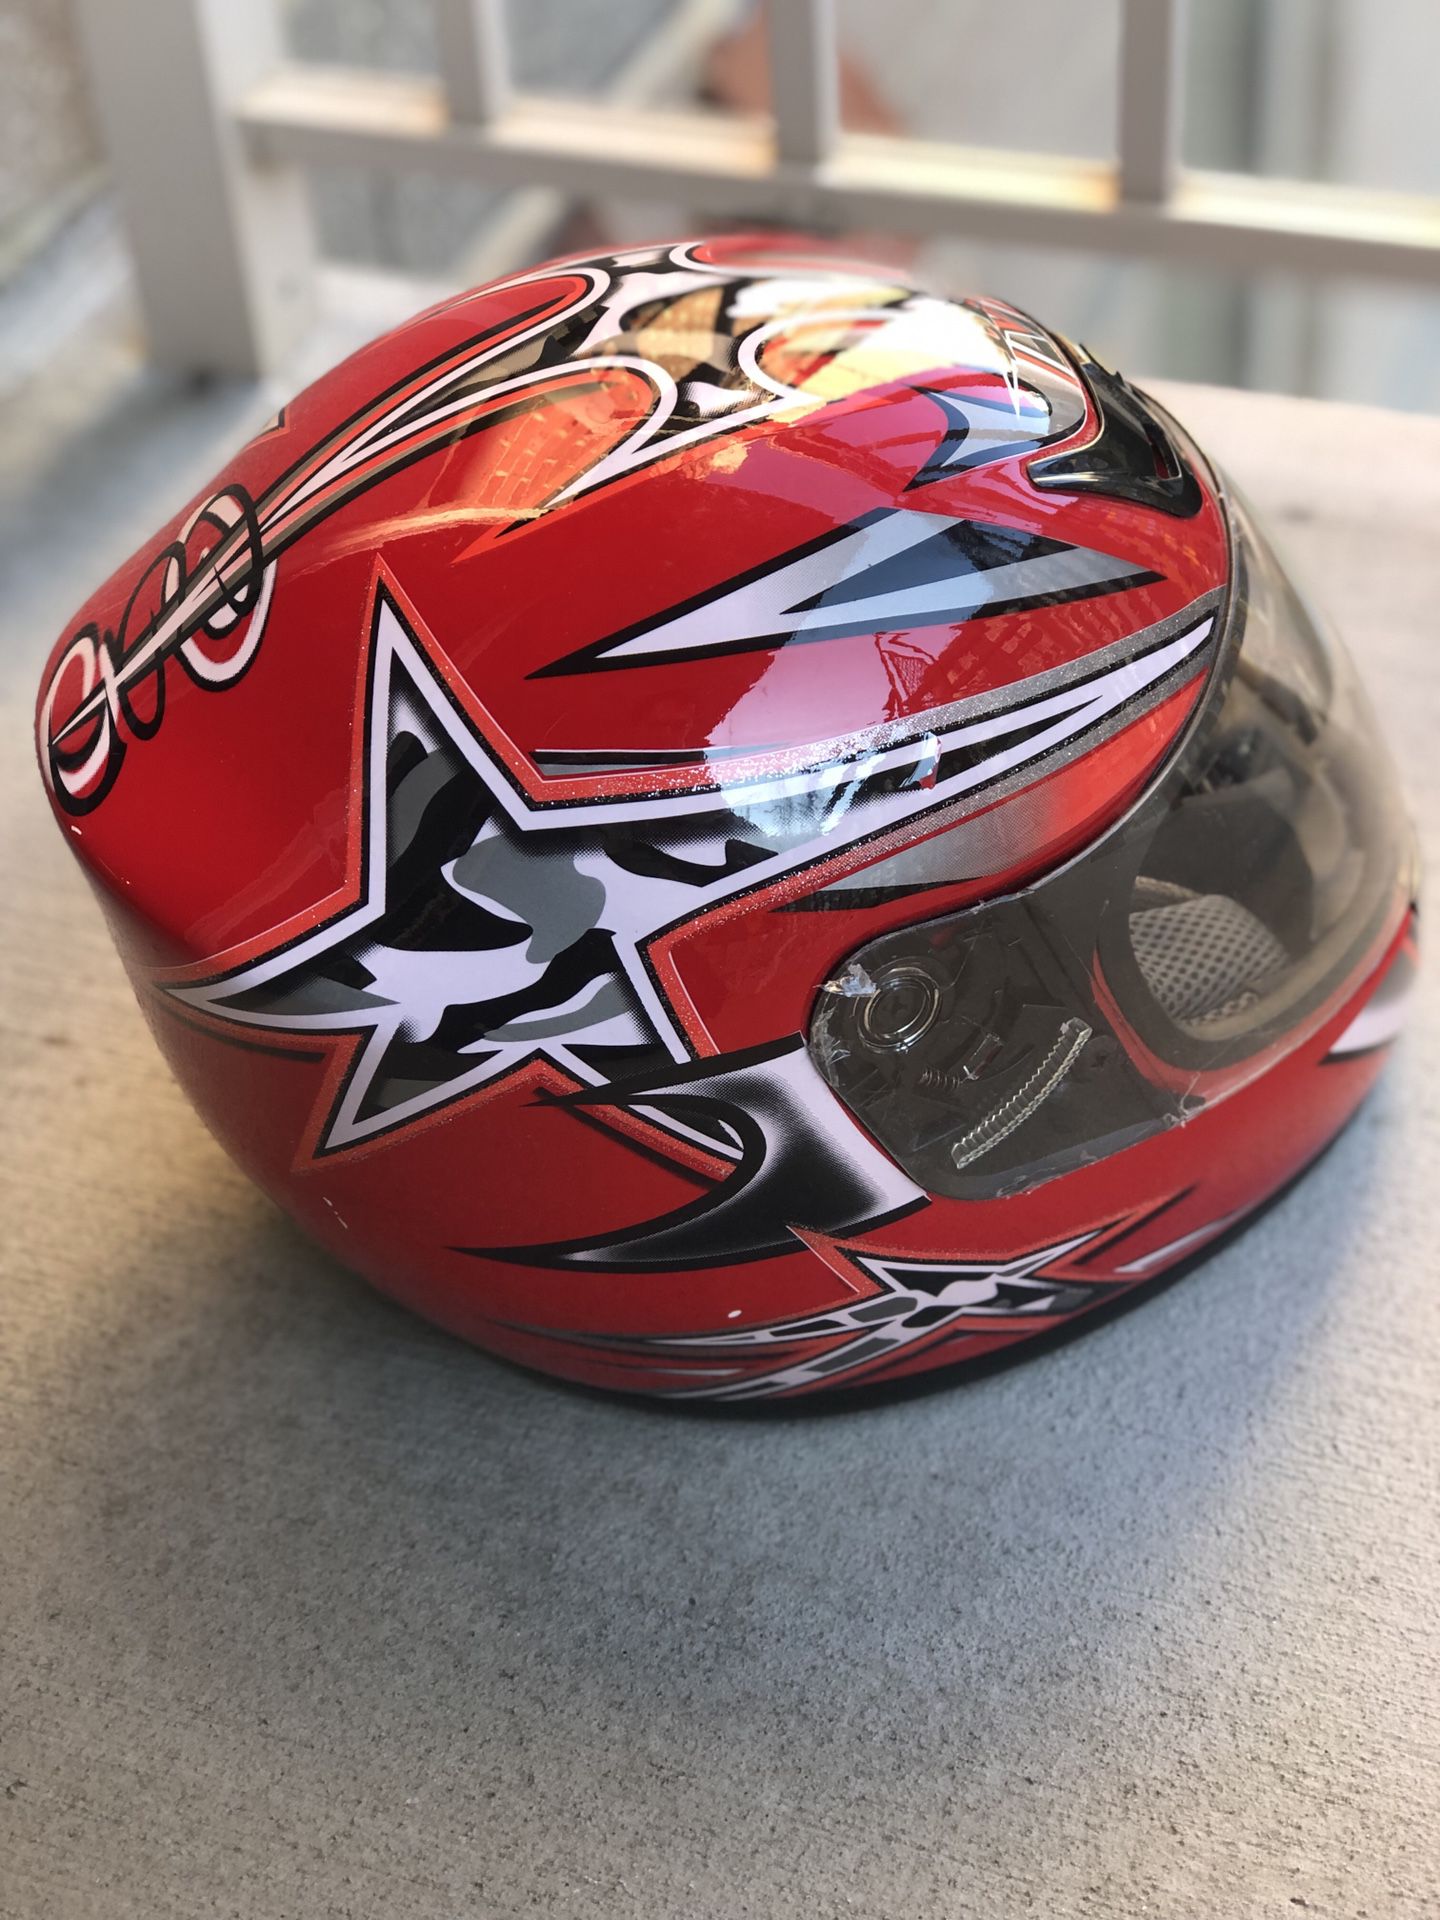 Brand new custom, full face helmet